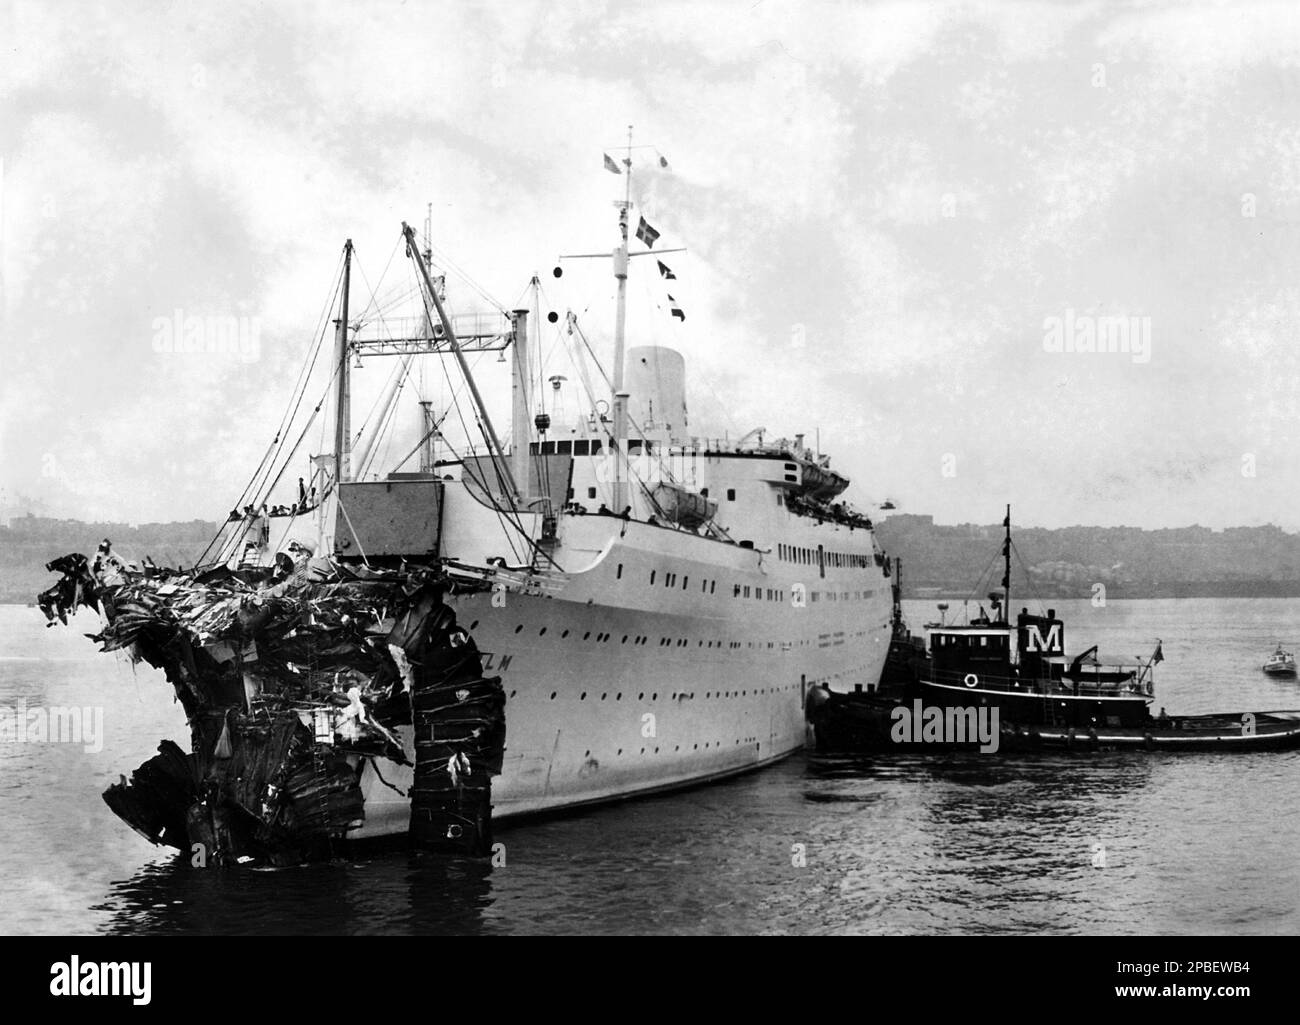 1956 : die SS Holm , nach dem Zusammenbruch mit der SS Andrea Doria . Die Andrea Doria war ein Ozeandampfer für die italienische Linie (Societa' di Navigazione Italia), die in Genua, Italien, angetrieben wurde. Benannt nach dem Genoesischen Admiral Andrea Doria aus dem 16. Jahrhundert. Am 16. Juni 1951 startete das Schiff am 14. Januar 1953 auf Jungfernfahrt. Am 25. Juli 1956, als die Andrea Doria vor der Küste von Nantucket, Massachusetts, nach New York City segelte, kollidierte sie mit dem nach Osten gerichteten SS-Holm der Schwedisch-amerikanischen Linie, was eine der berühmtesten Schiffskatastrophen der Geschichte werden sollte. Getroffen Stockfoto